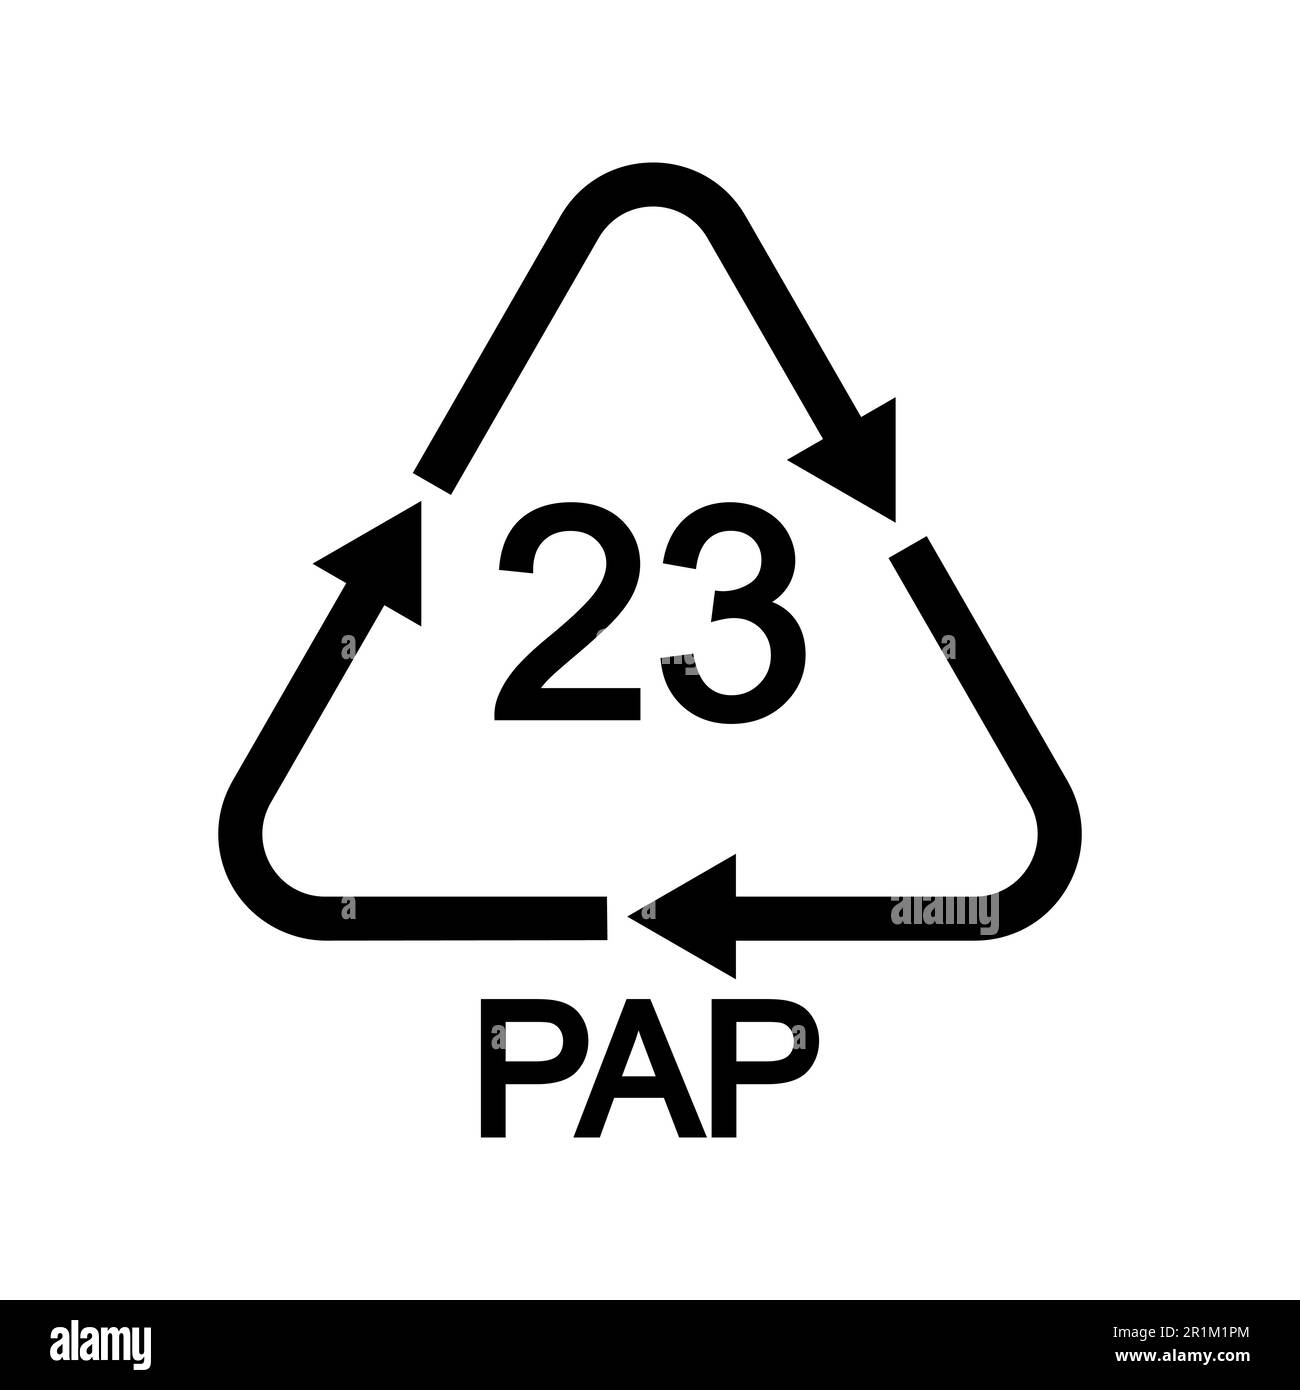 Recycling-Symbol aus Pappe in dreieckiger Form mit Pfeilen. 23 wiederverwendbares PAP-Symbol isoliert auf weißem Hintergrund. Umweltschutzkonzept Stock Vektor